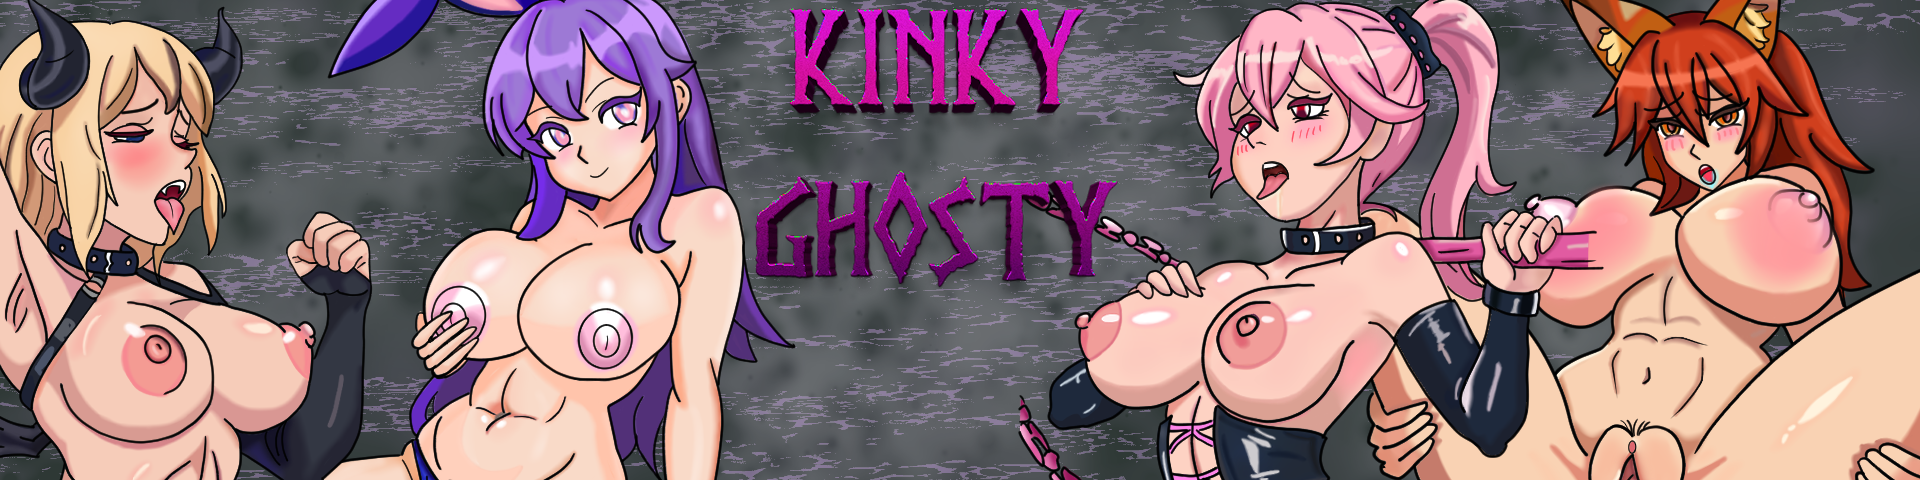 Kinky Ghosty version 0.7